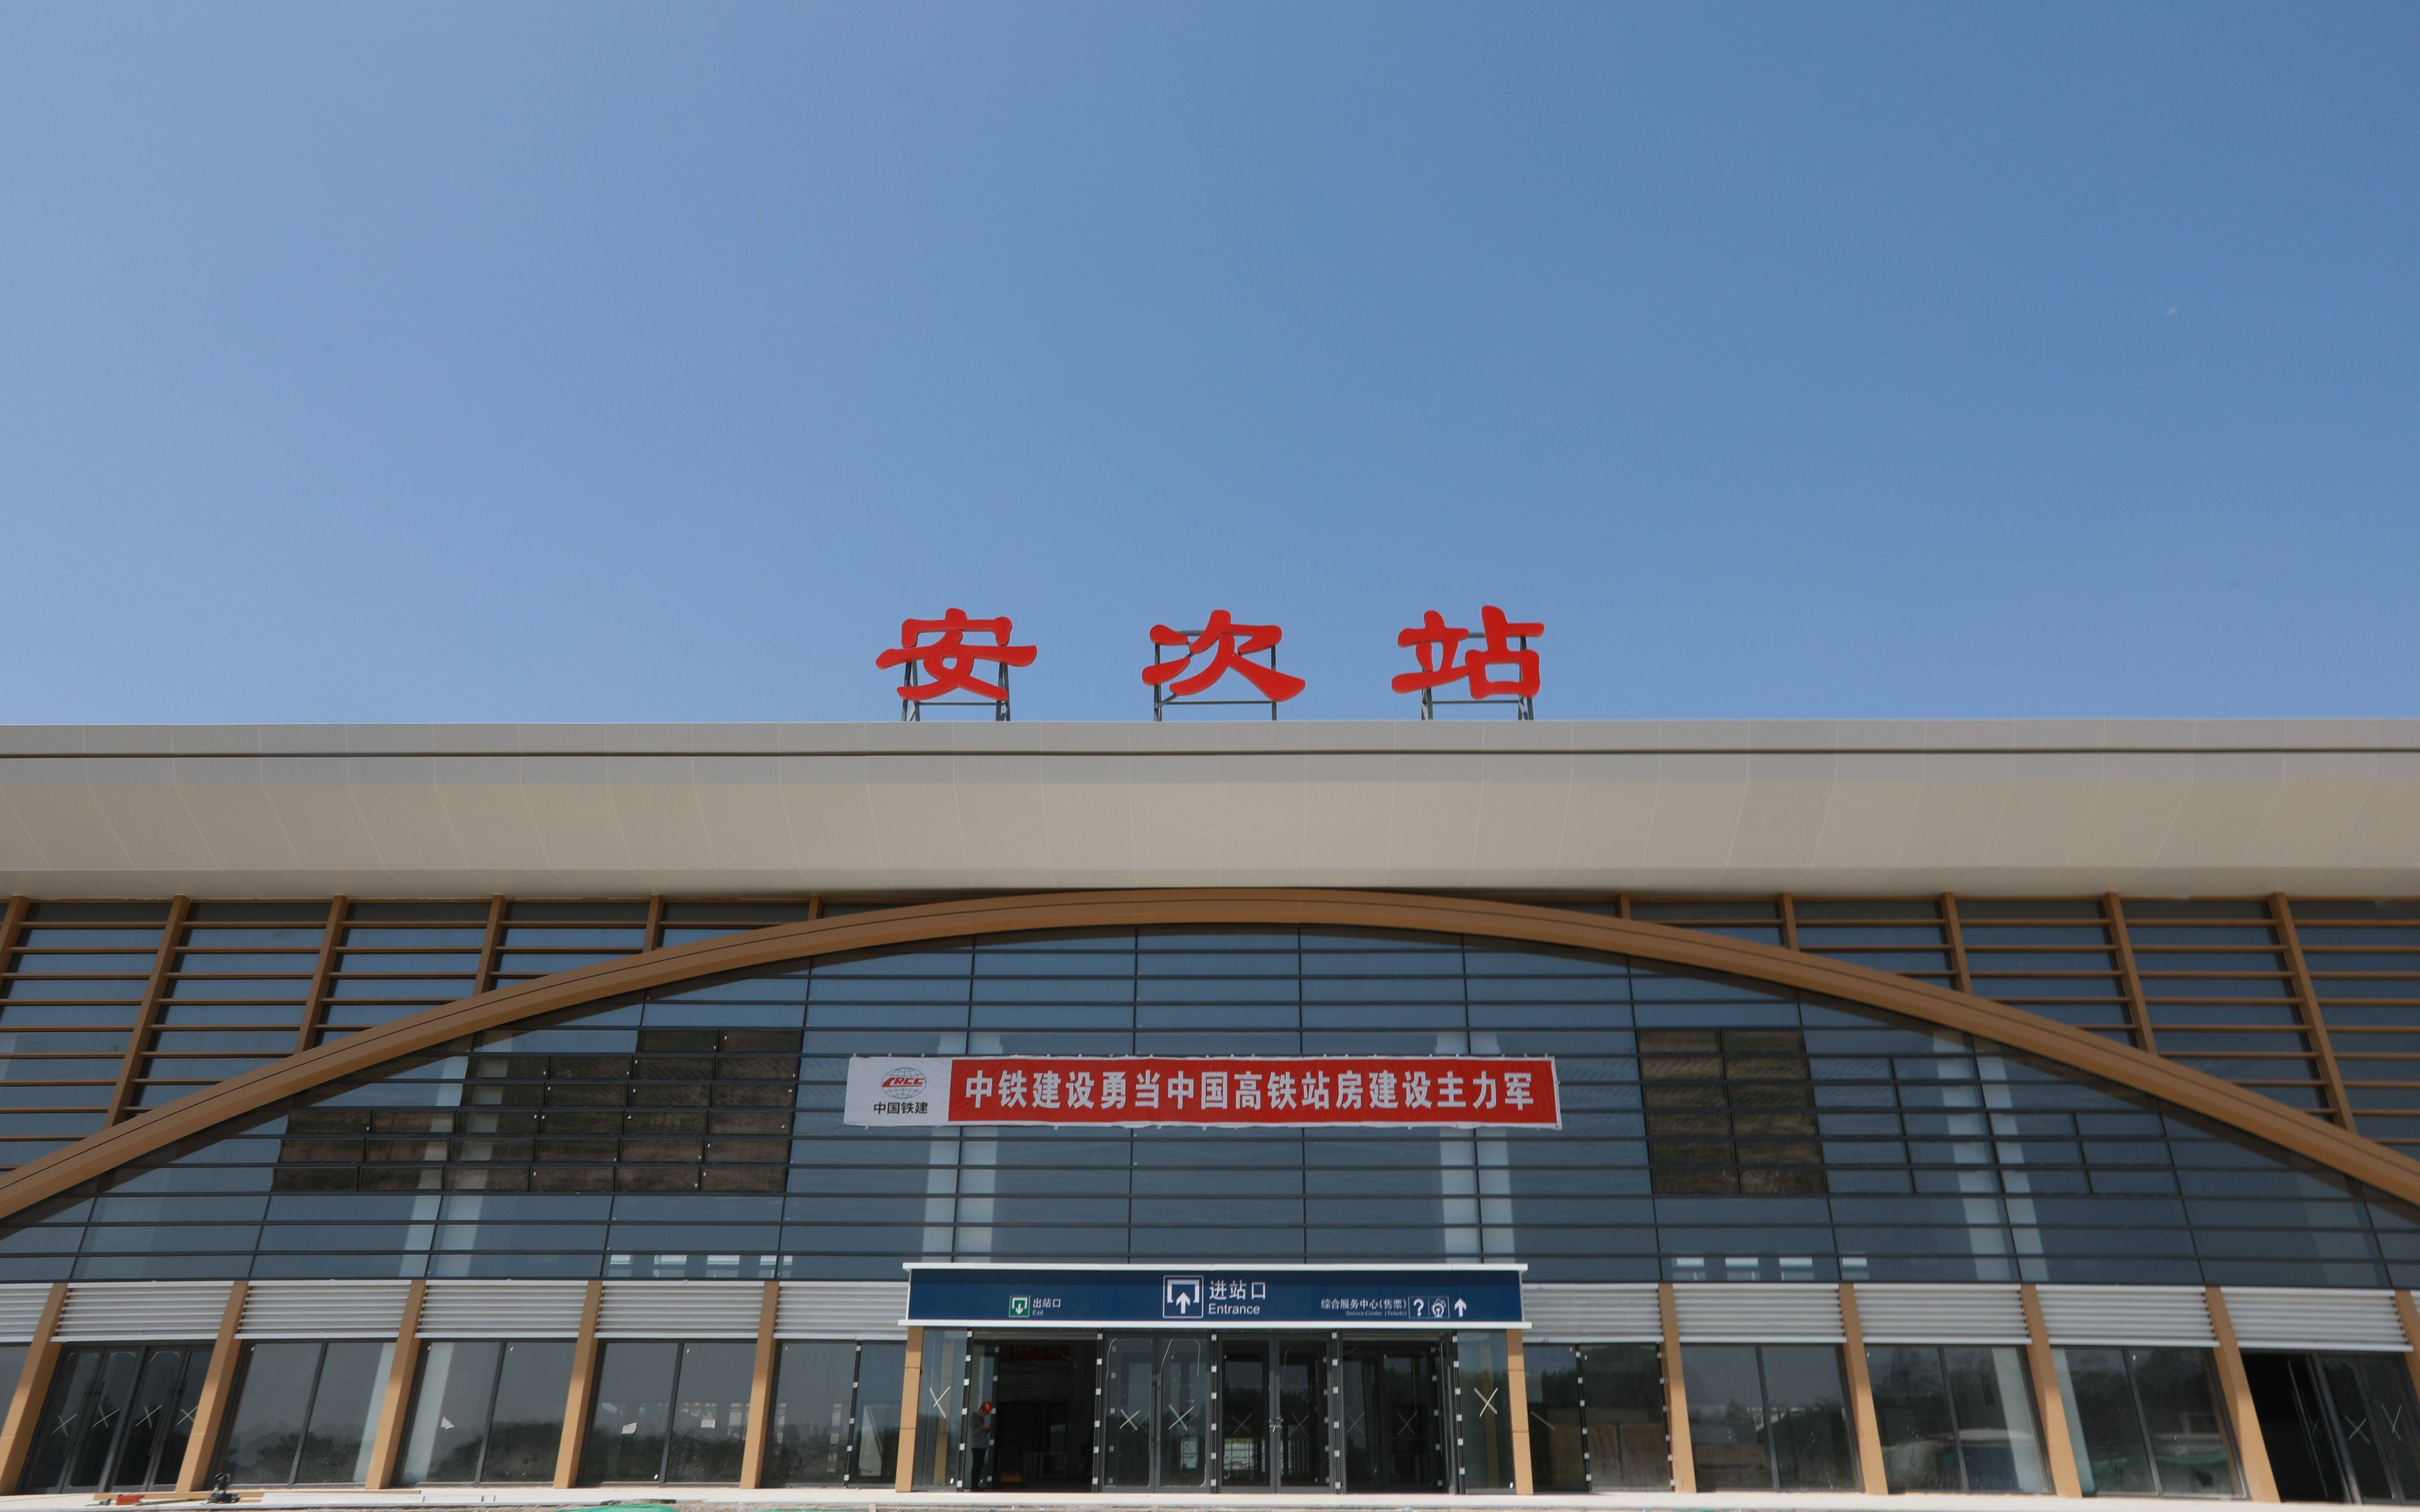 津兴铁路2座新建站房装修全部完成,车站用上地暖可节能约15%